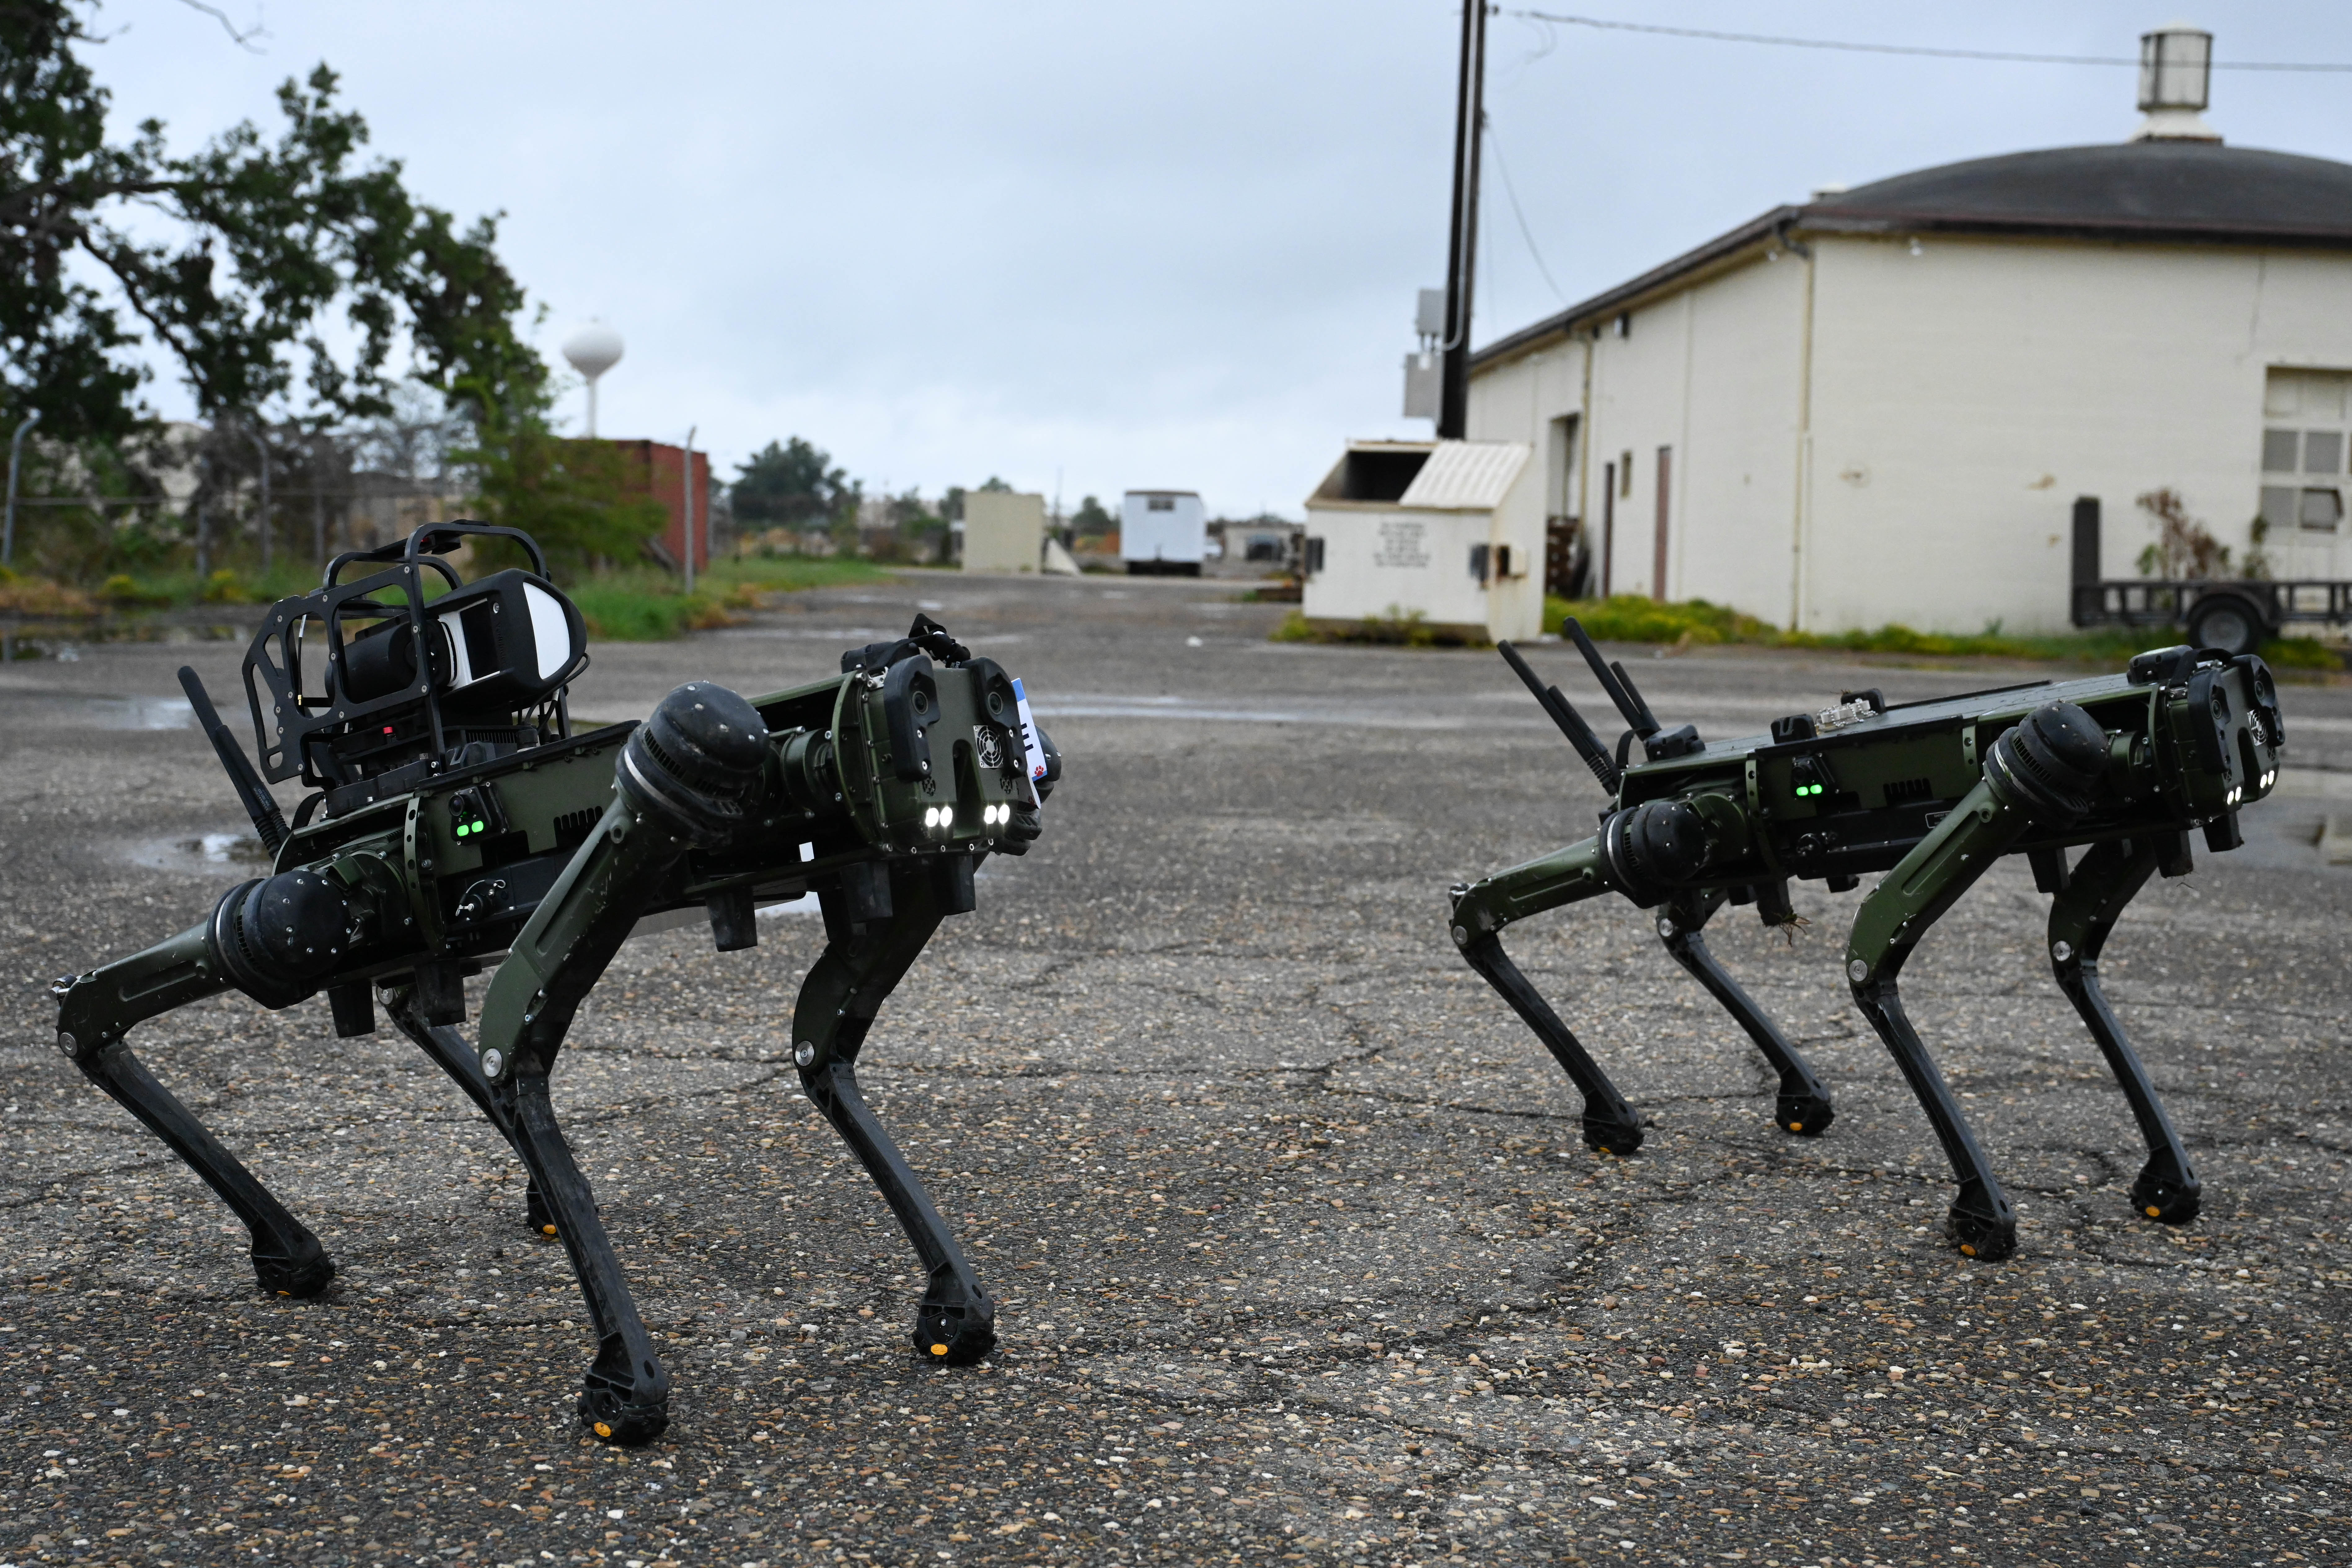 military robot dog